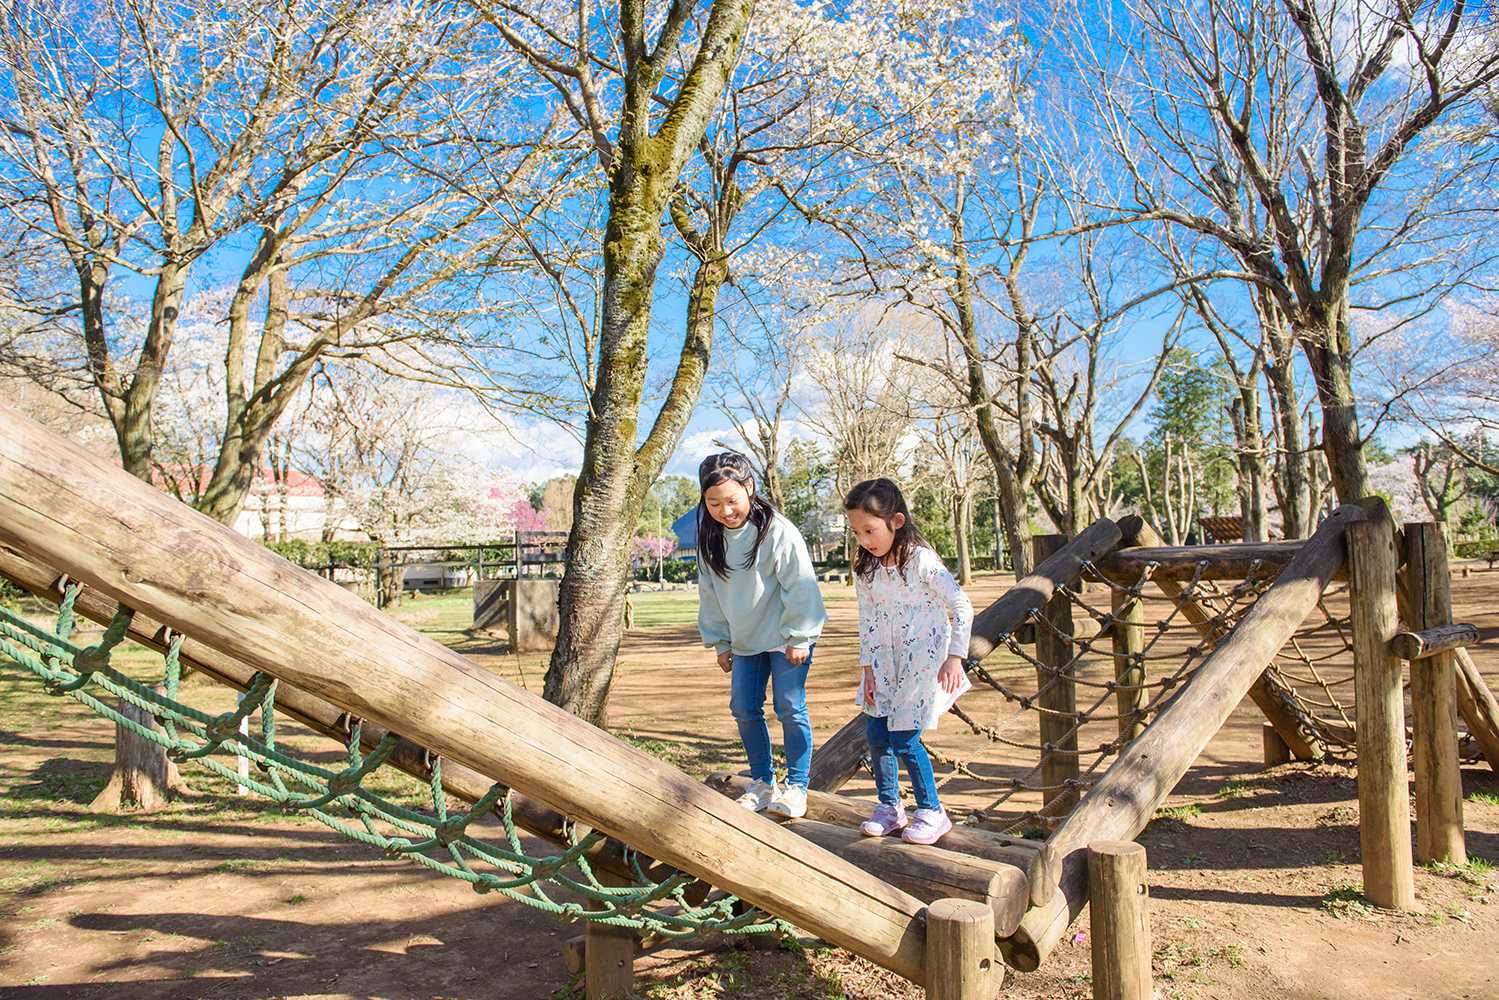 木で造られたアスレチックで2人の女の子が遊んでいる様子が写っている佐倉草ぶえの丘の写真